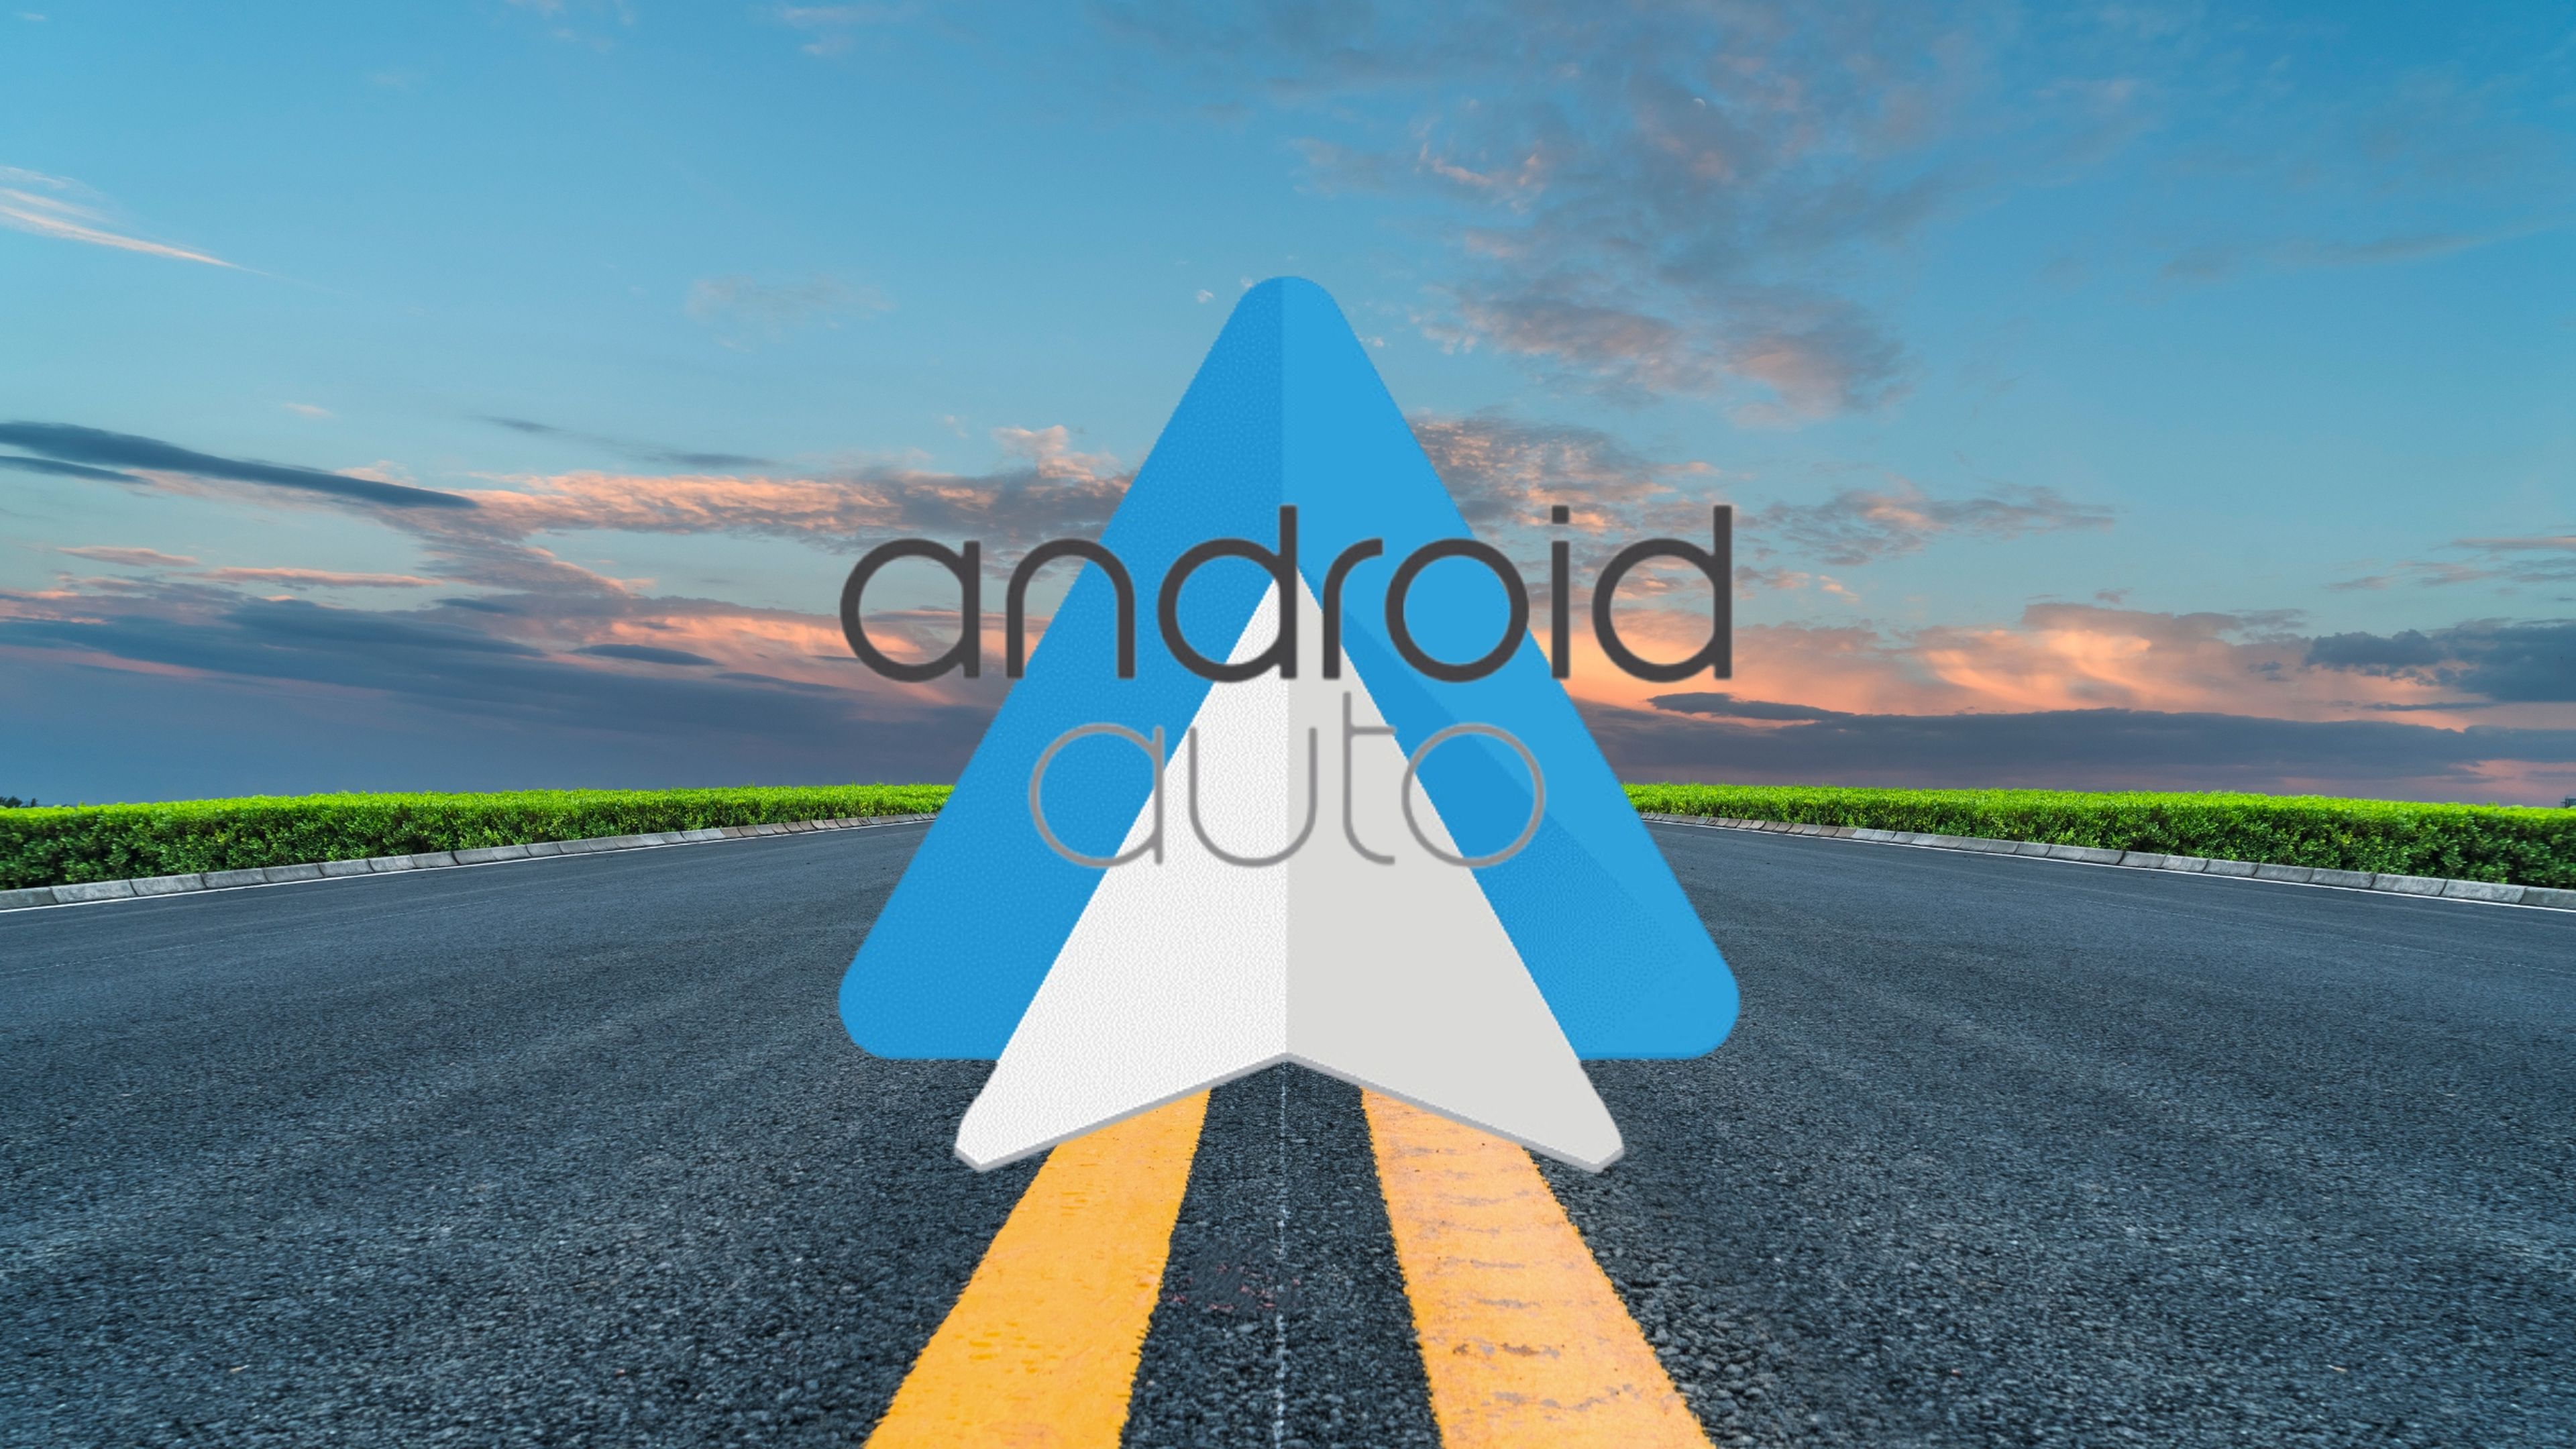 El misterio de la carretera que "odia" Android Auto y que nadie sabe solucionar